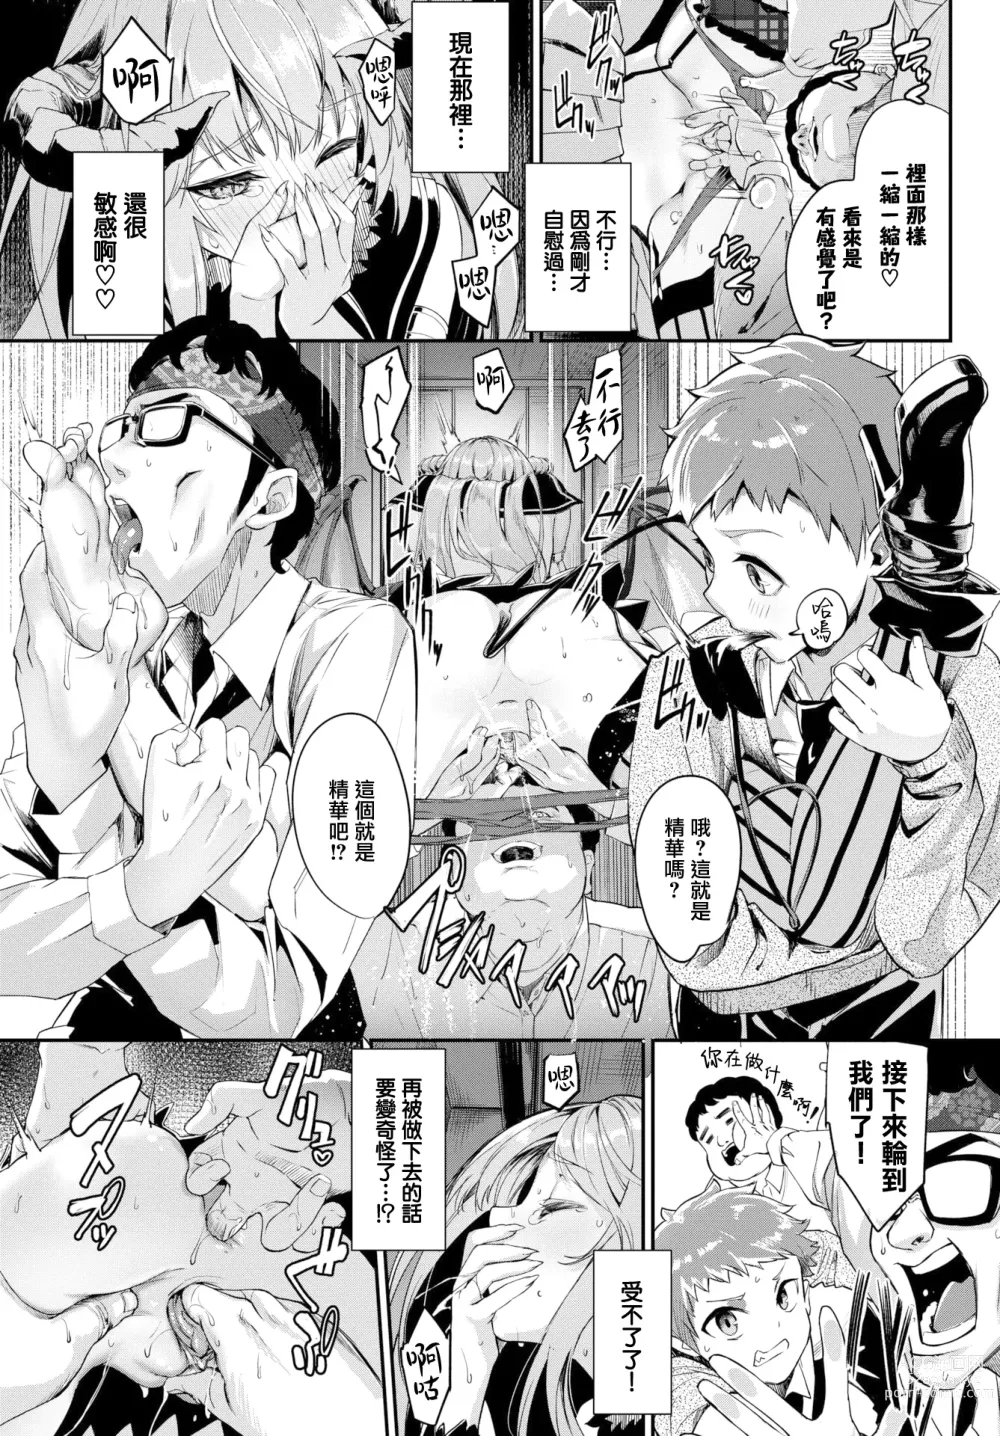 Page 182 of manga Funny Fuck!